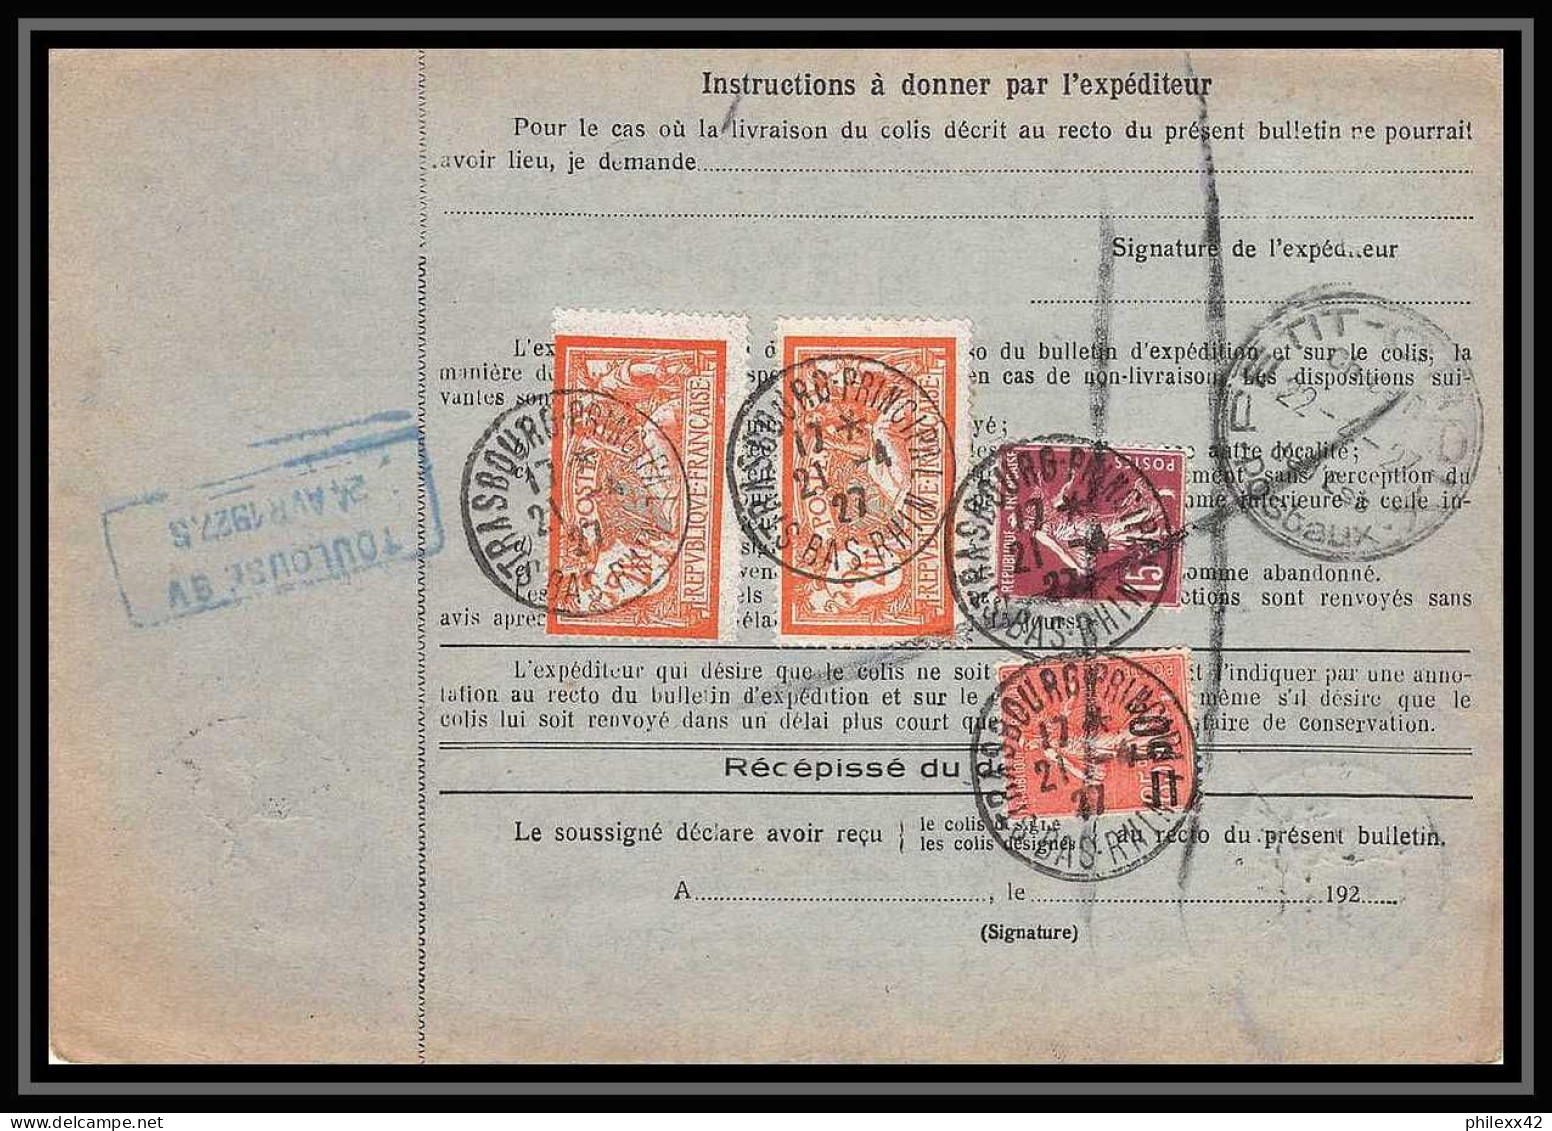 25086 Bulletin D'expédition France Colis Postaux Fiscal Haut Rhin 1927 Strasbourg Semeuse Merson 145 Alsace-Lorraine  - Briefe U. Dokumente